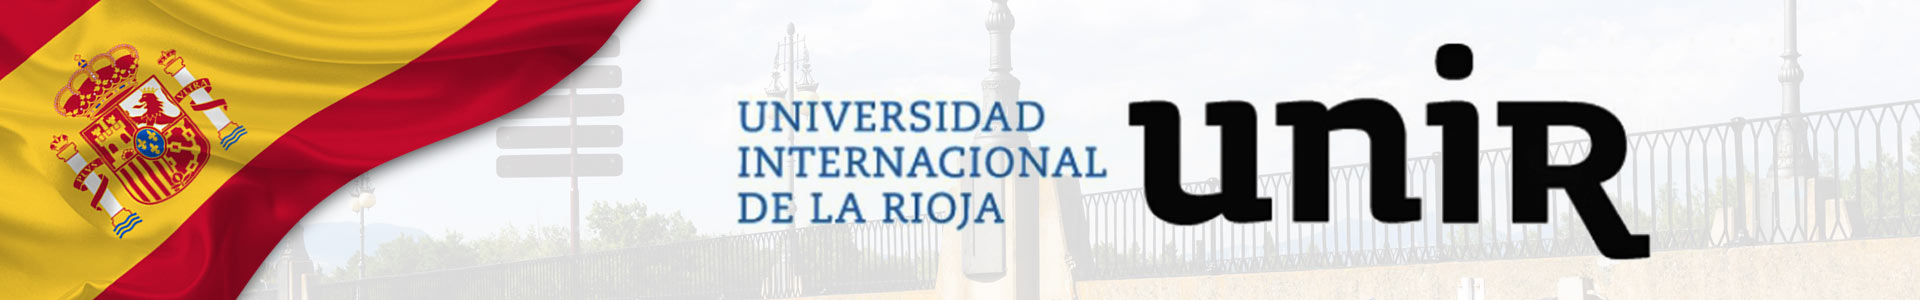 bandera de España ondeada y logotipo de UNIR con la Universidad Internacional de la Rioja